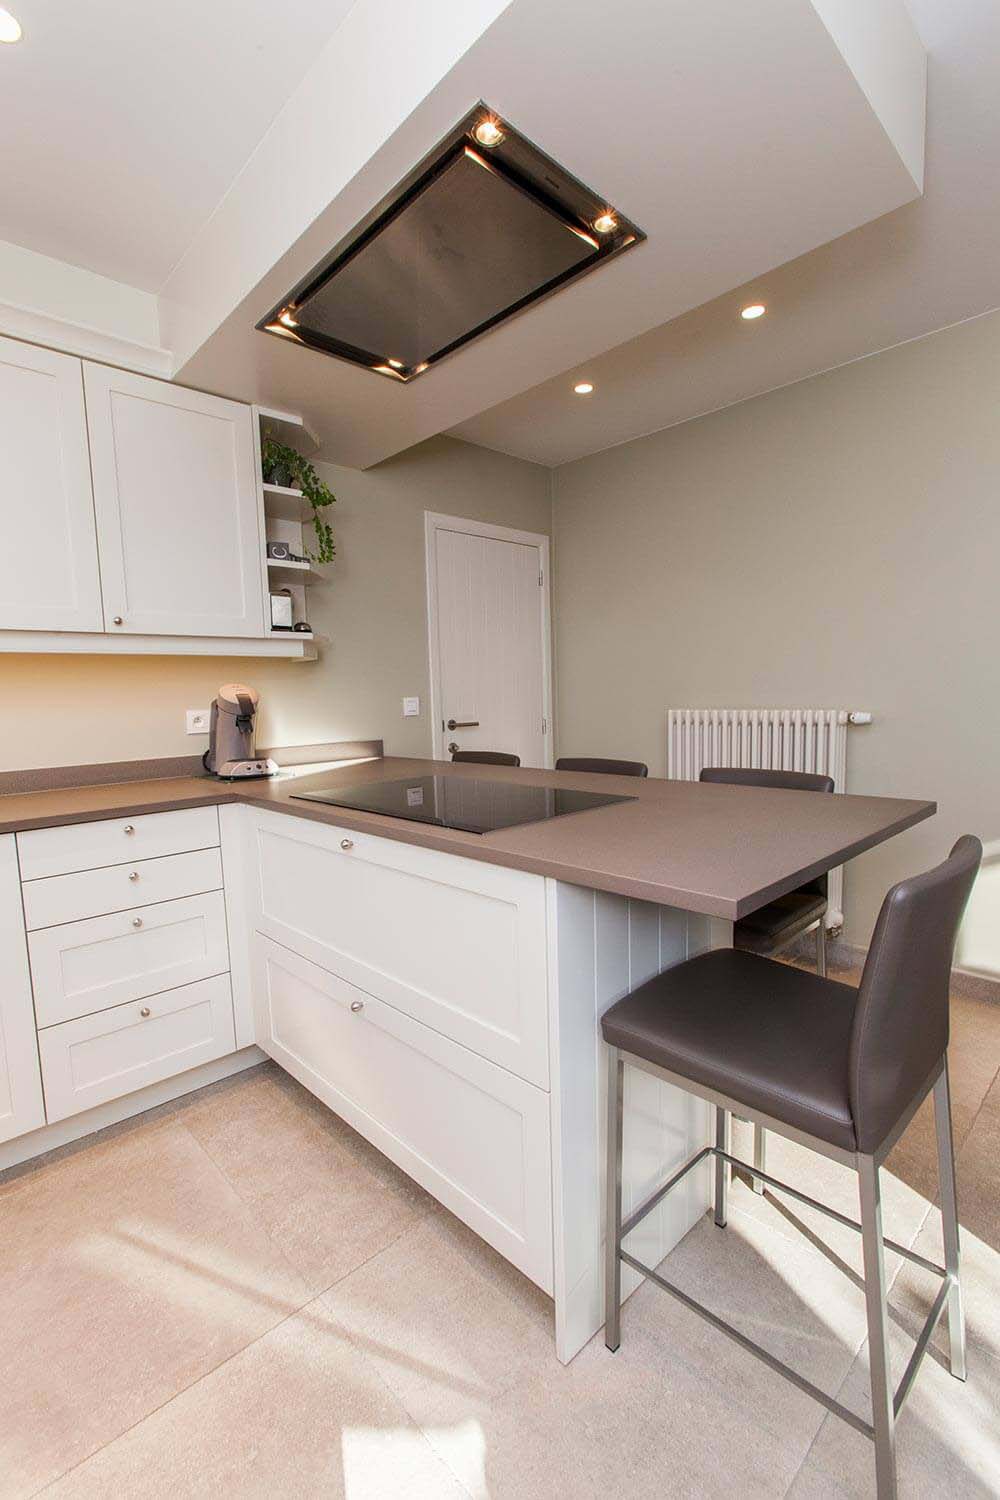 foto van keuken met ontbijtbar. Keuken met witte kastjes, beige tegels op de vloer en bruin-grijs werkblad